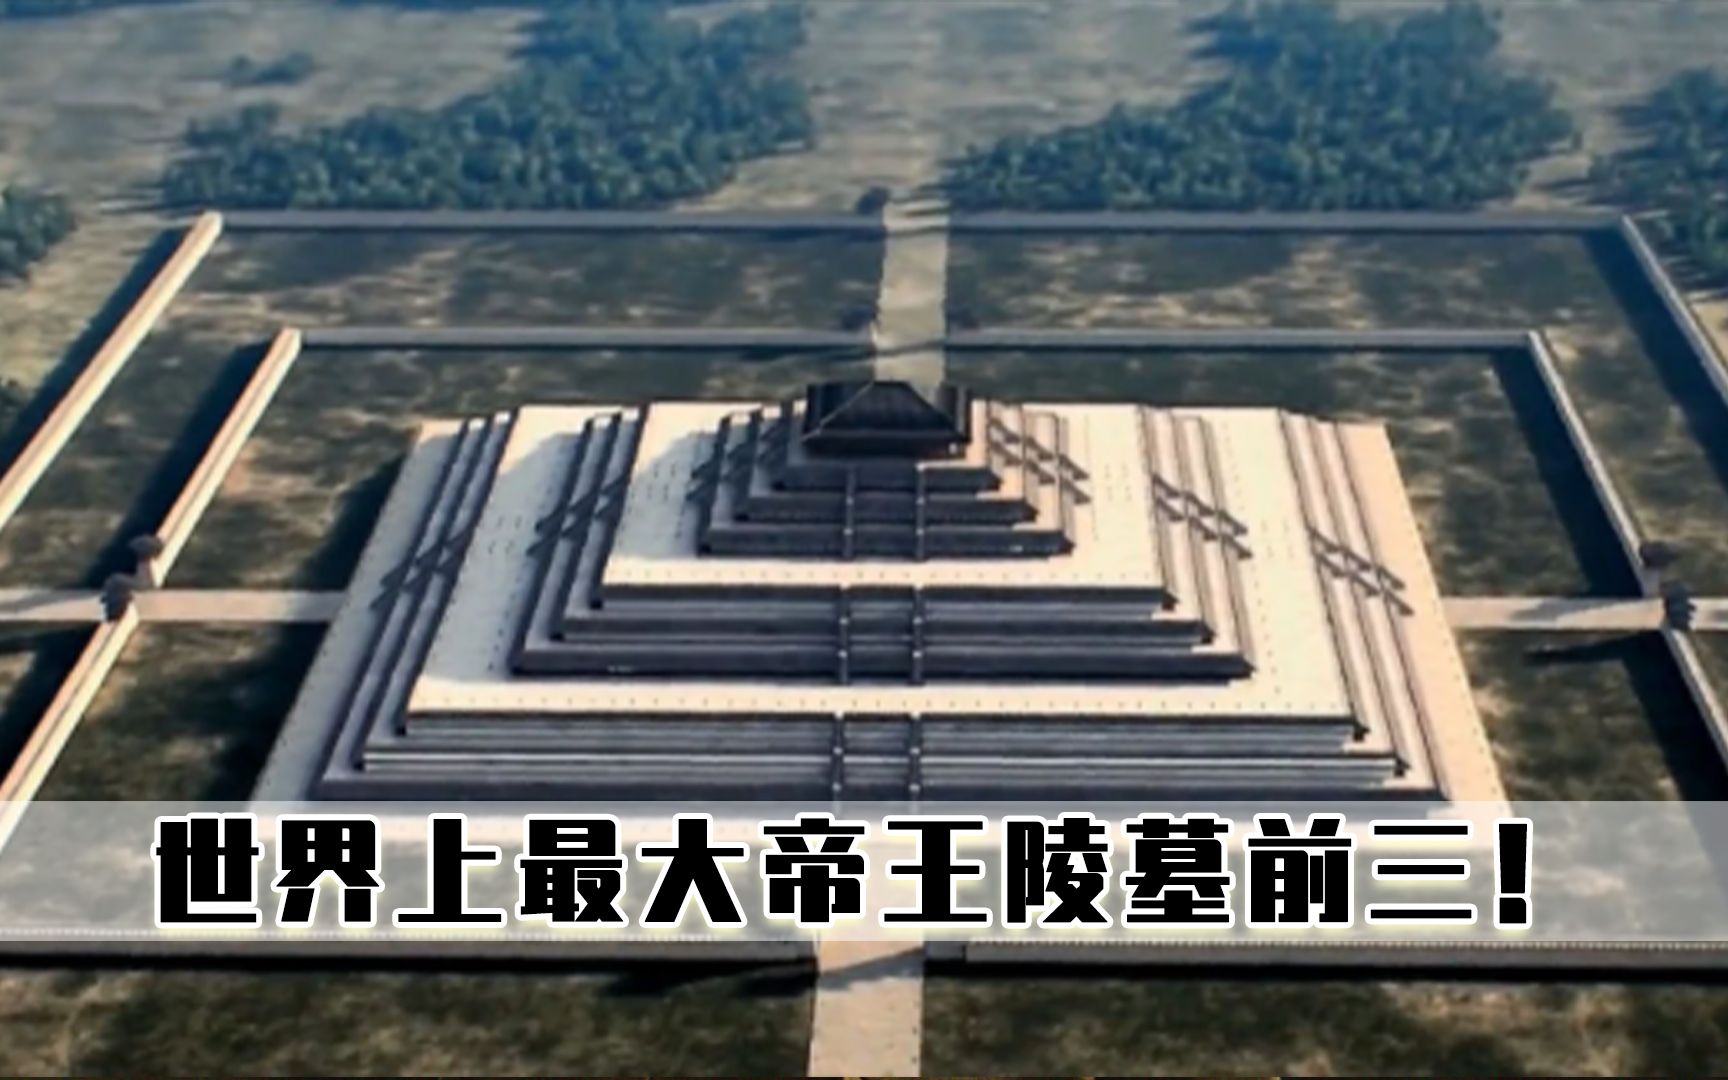 世界上最大的陵墓居然在日本中国的秦始皇陵都没他大